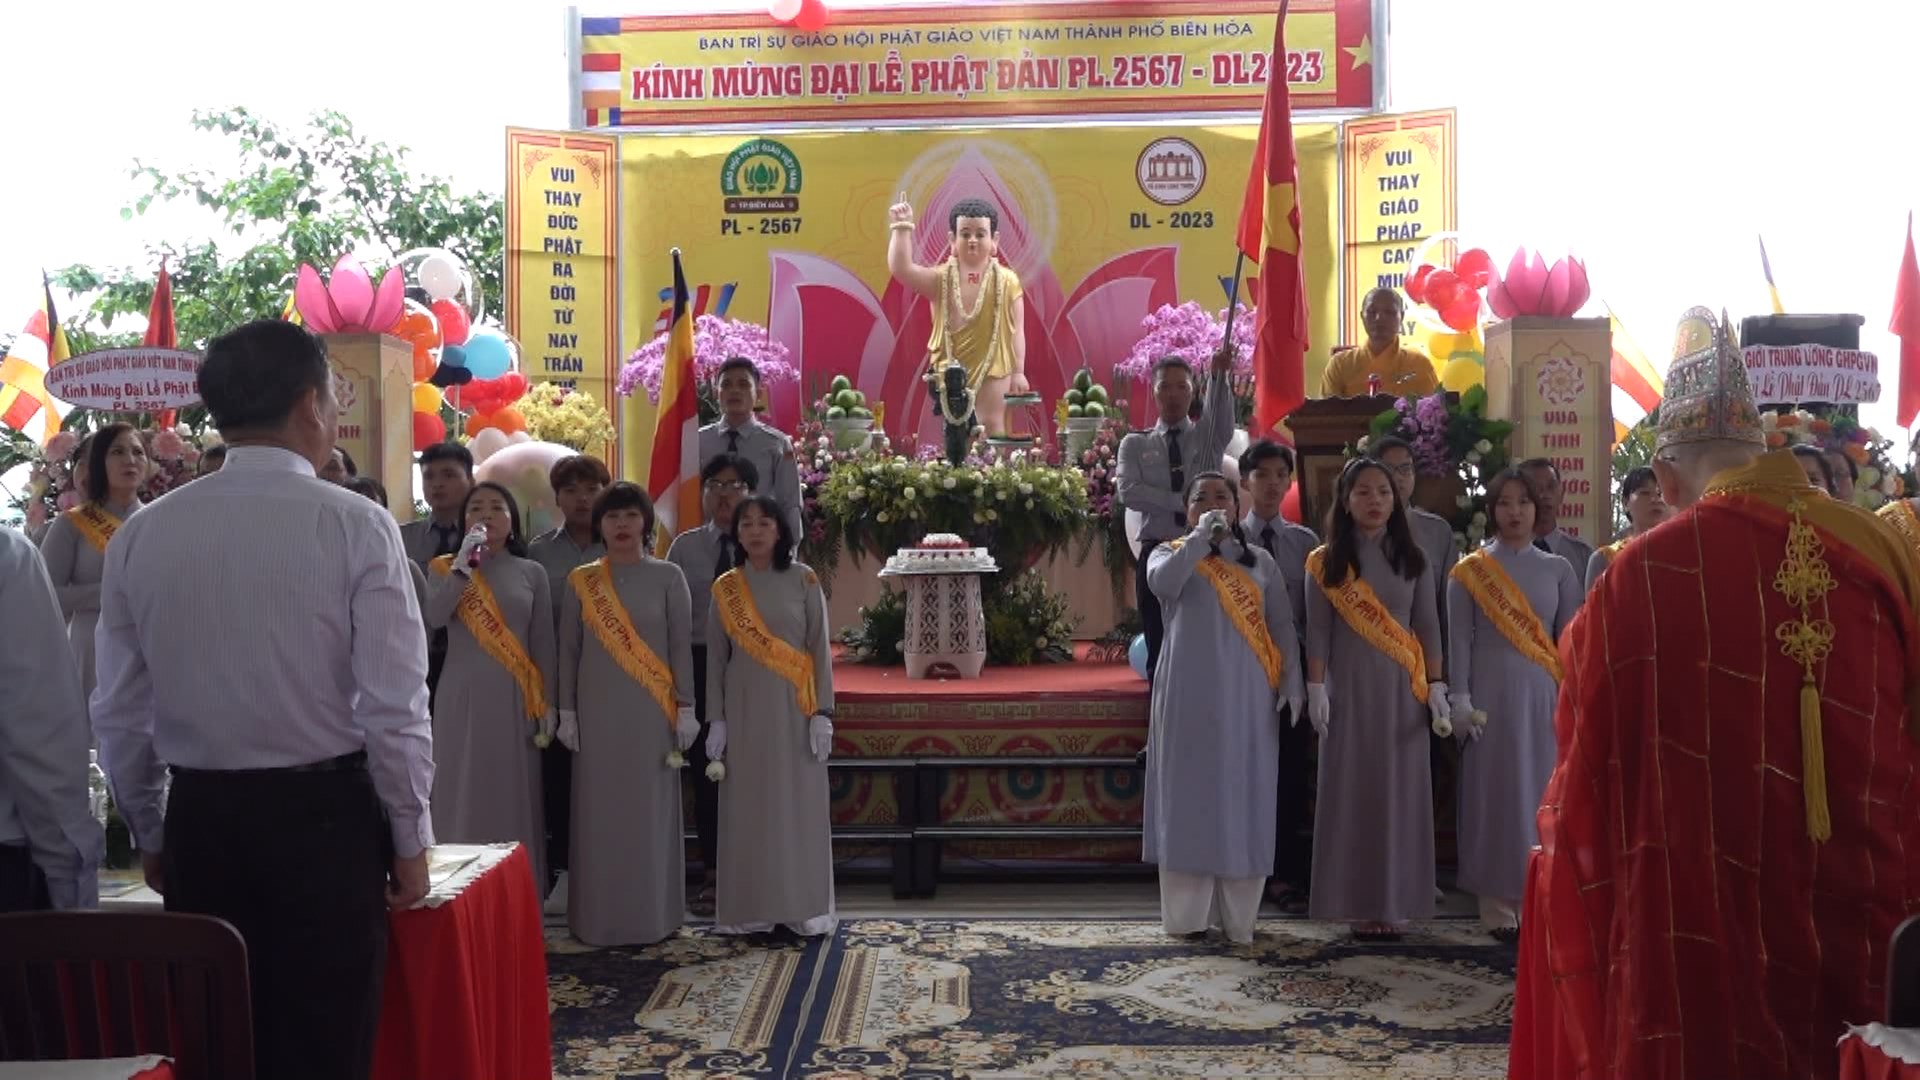 Phật giáo Biên Hòa long trọng tổ chức đại lễ Phật đản Phật lịch 2567